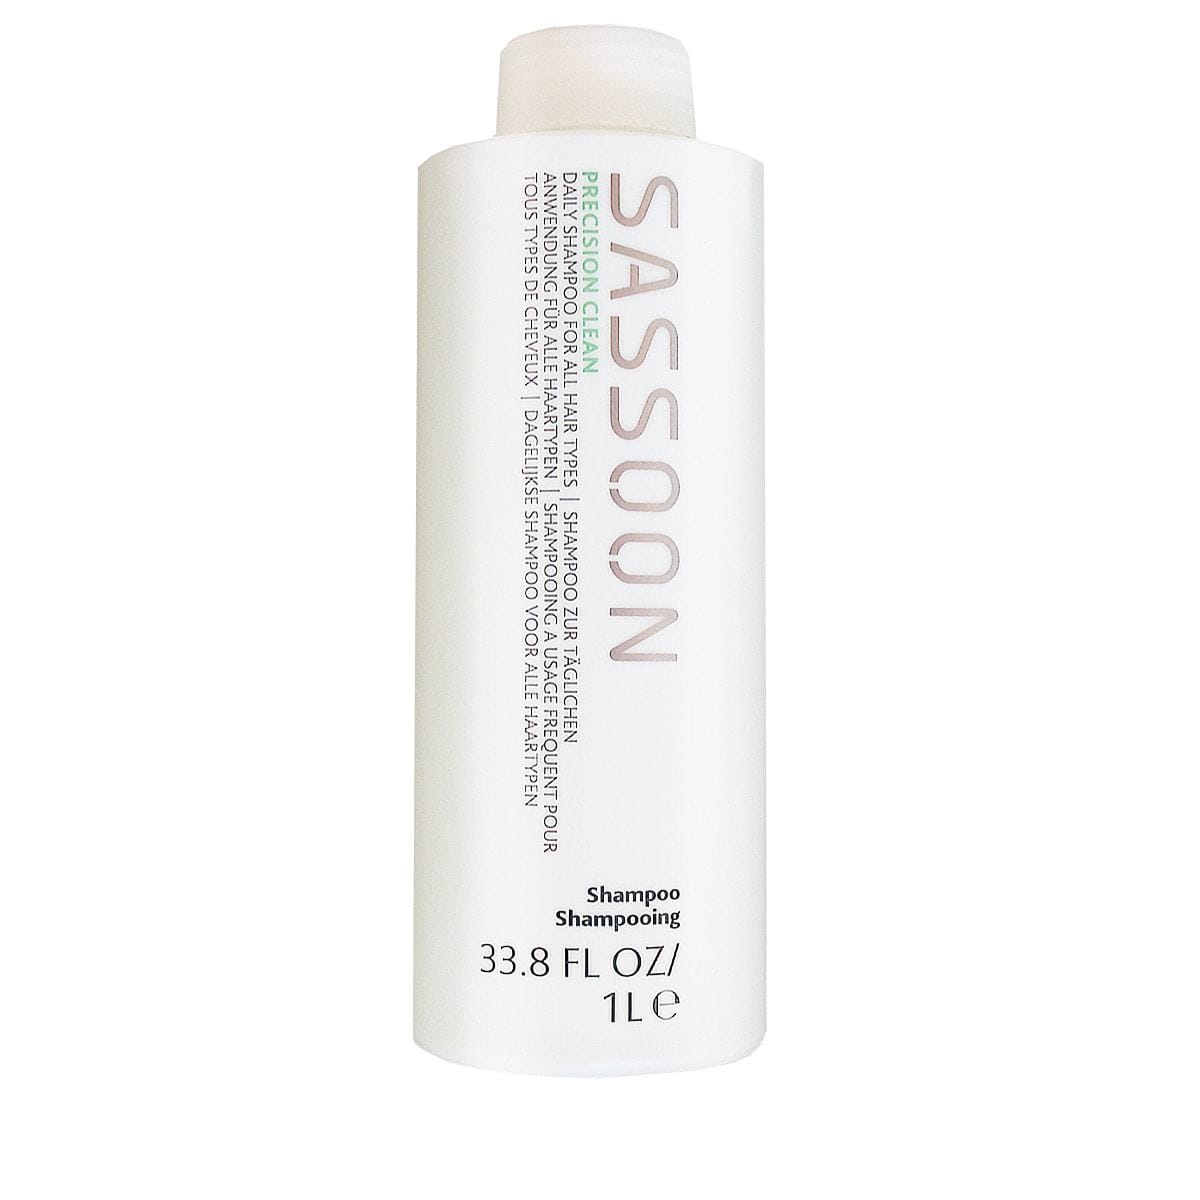 Sassoon Precision Clean Shampoo 1000ml - Hairsale.se